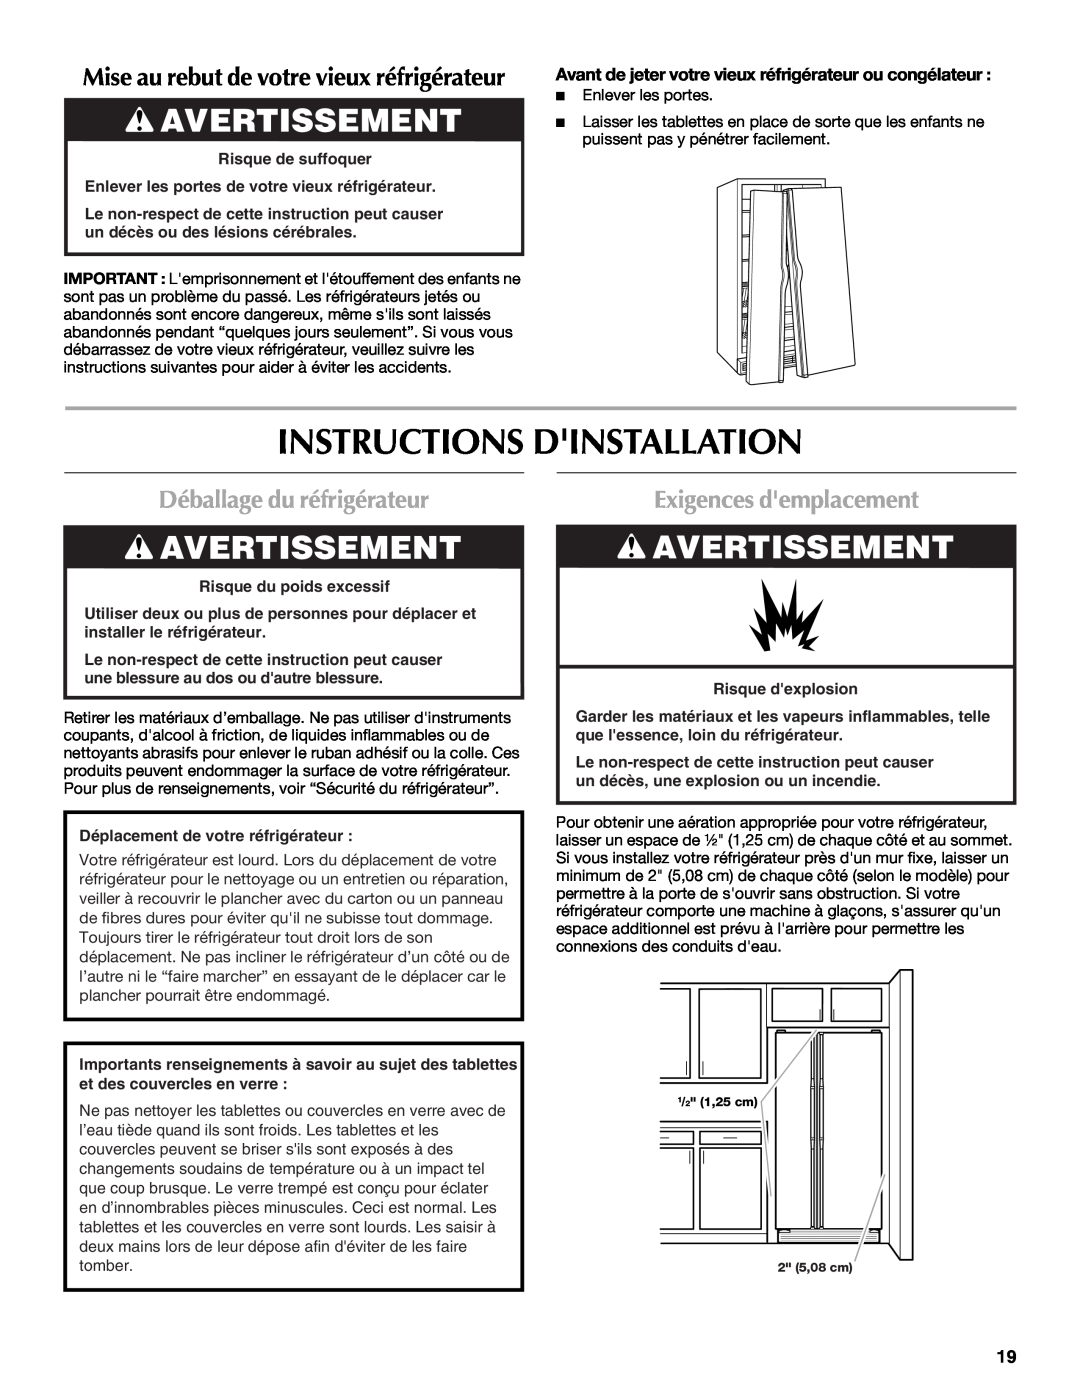 Maytag W10237807A Instructions Dinstallation, Avertissement, Déballage du réfrigérateur, Exigences demplacement 